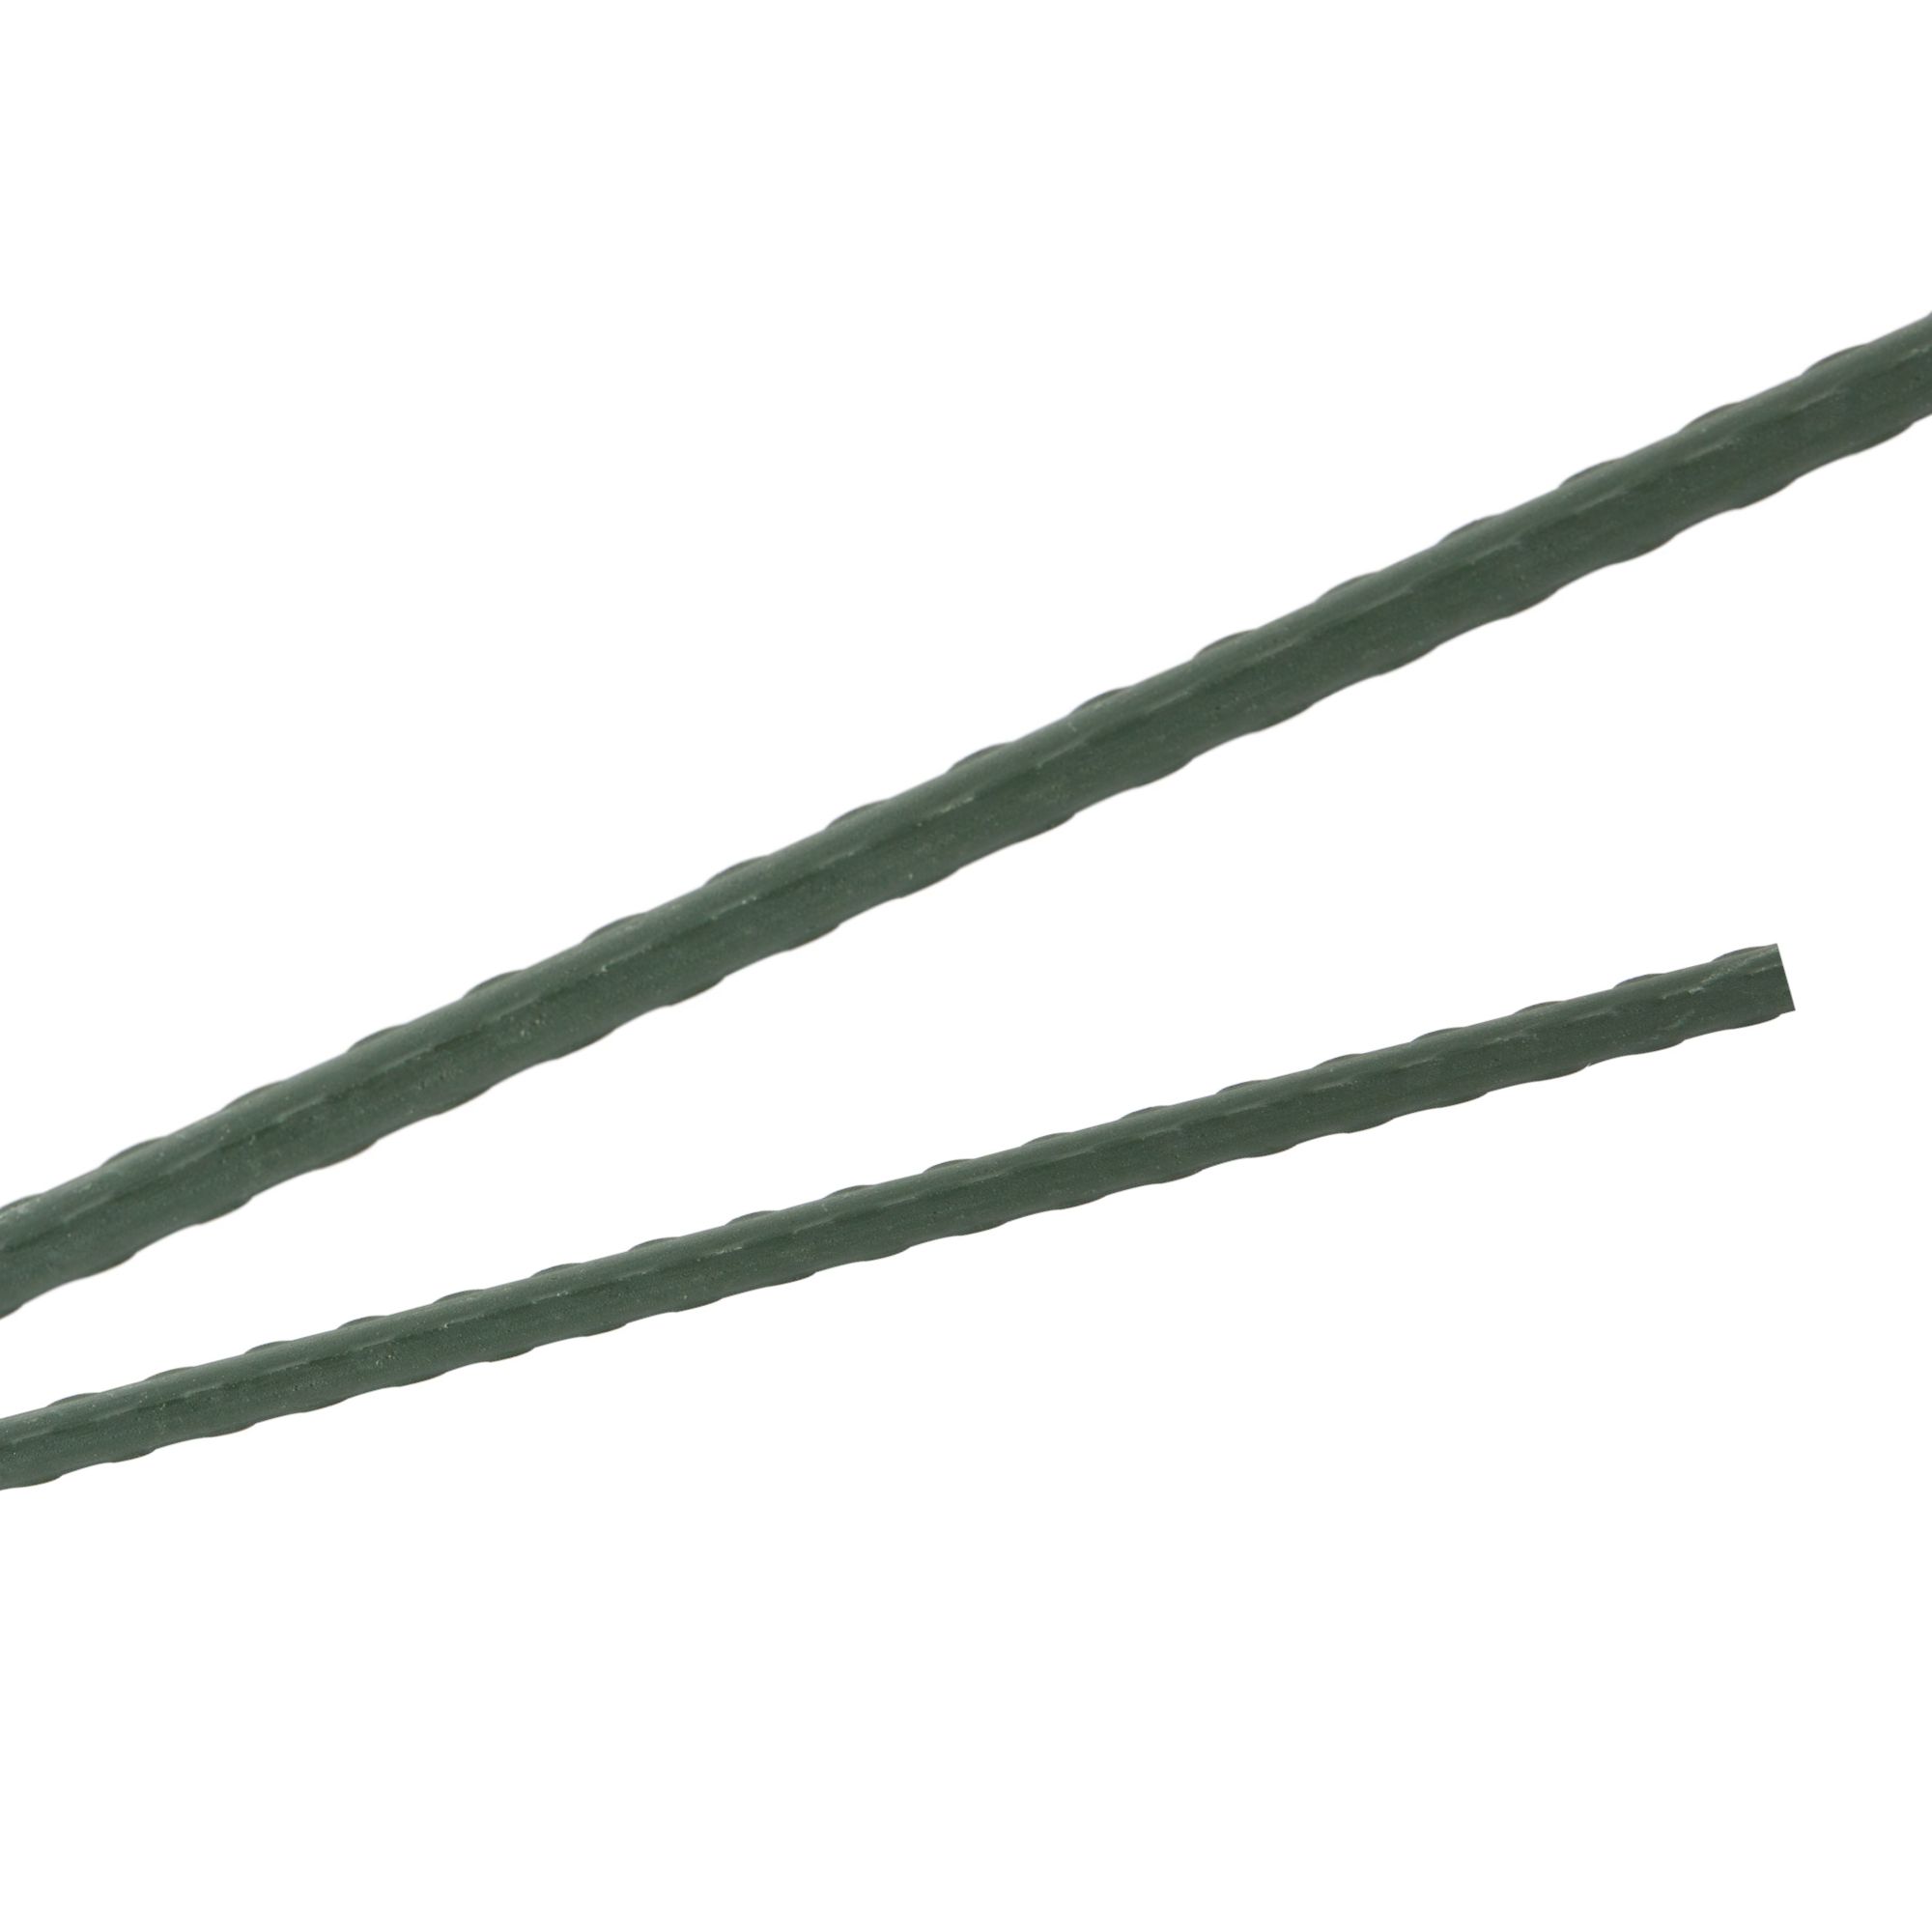 Tyč podpěrná, 8mm, 120cm, kov+PVC, zelená 0.072000 Kg GIGA Sklad20 211787 197